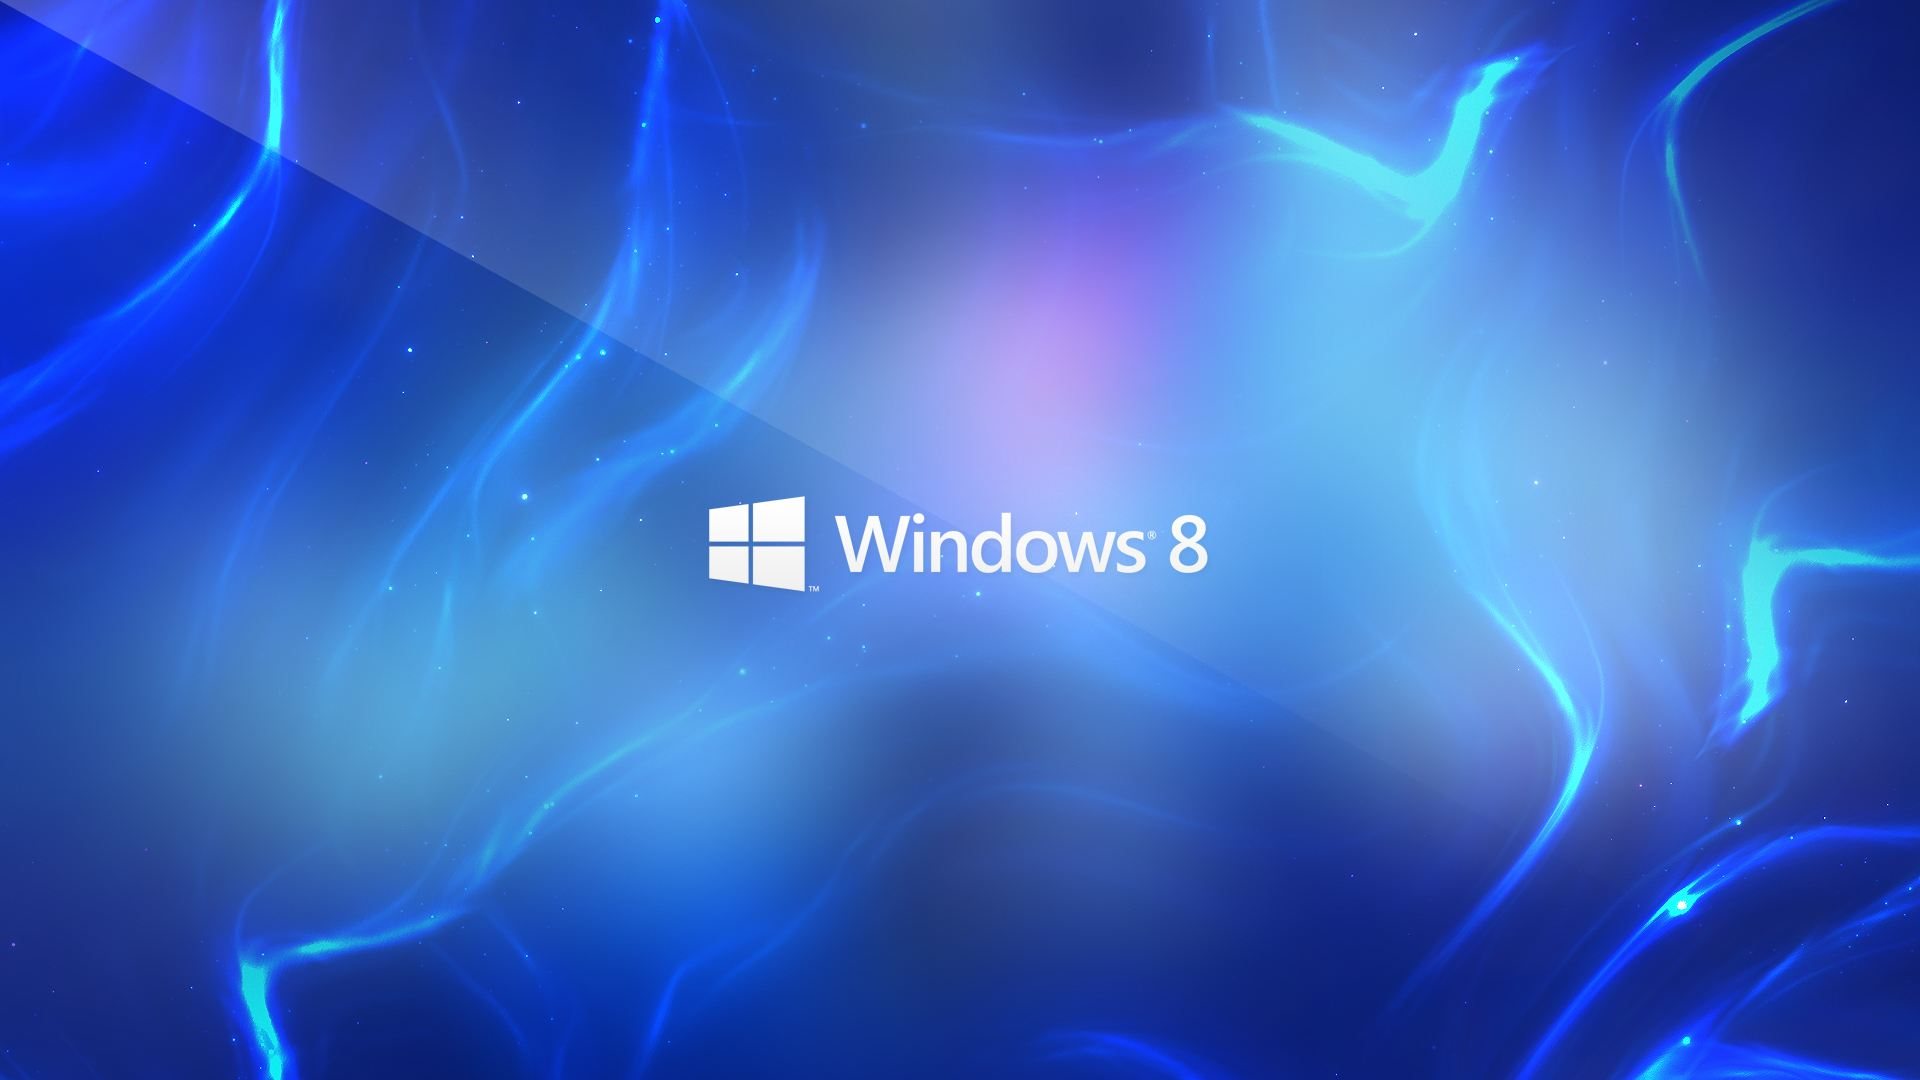 windows desktop wallpaper hd,blau,elektrisches blau,licht,kobaltblau,beleuchtung